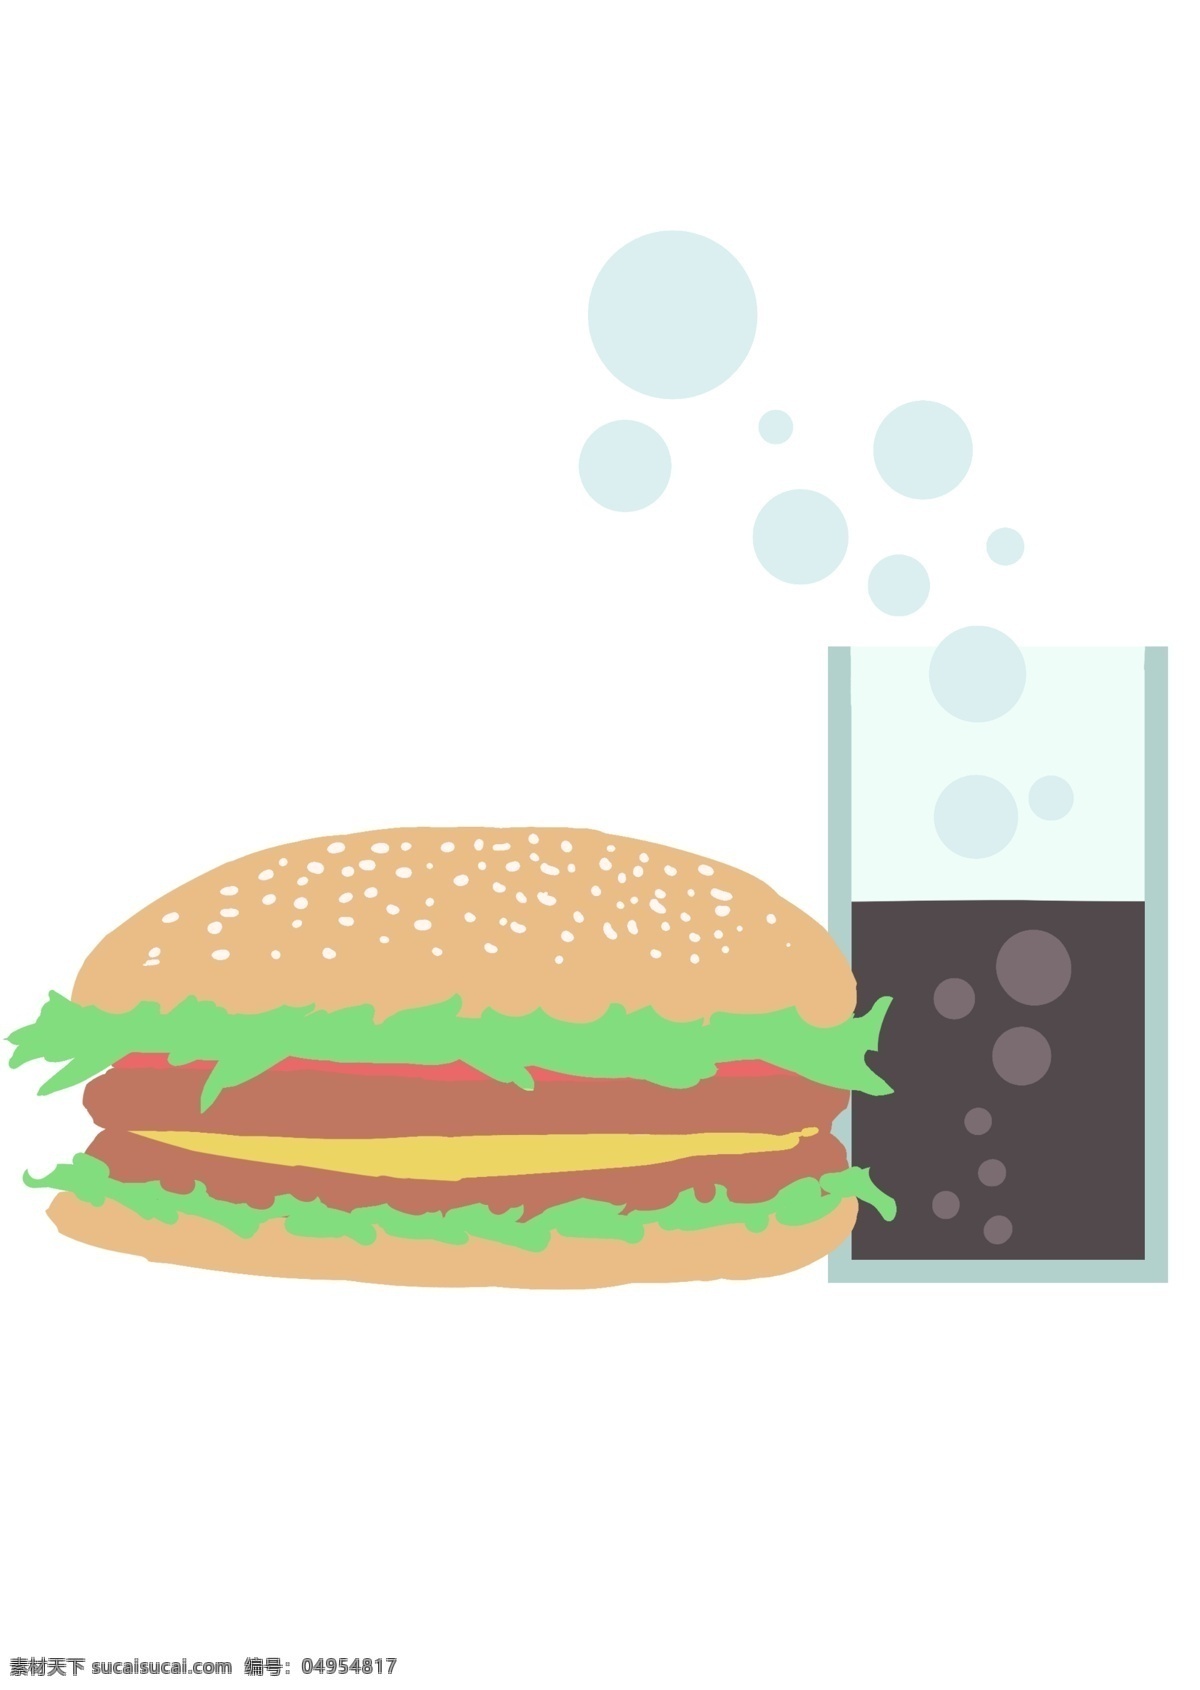 美味 小吃 汉堡包 插画 美味的汉堡包 卡通插画 小吃插画 美味插画 美食插画 食品插画 德克士汉堡包